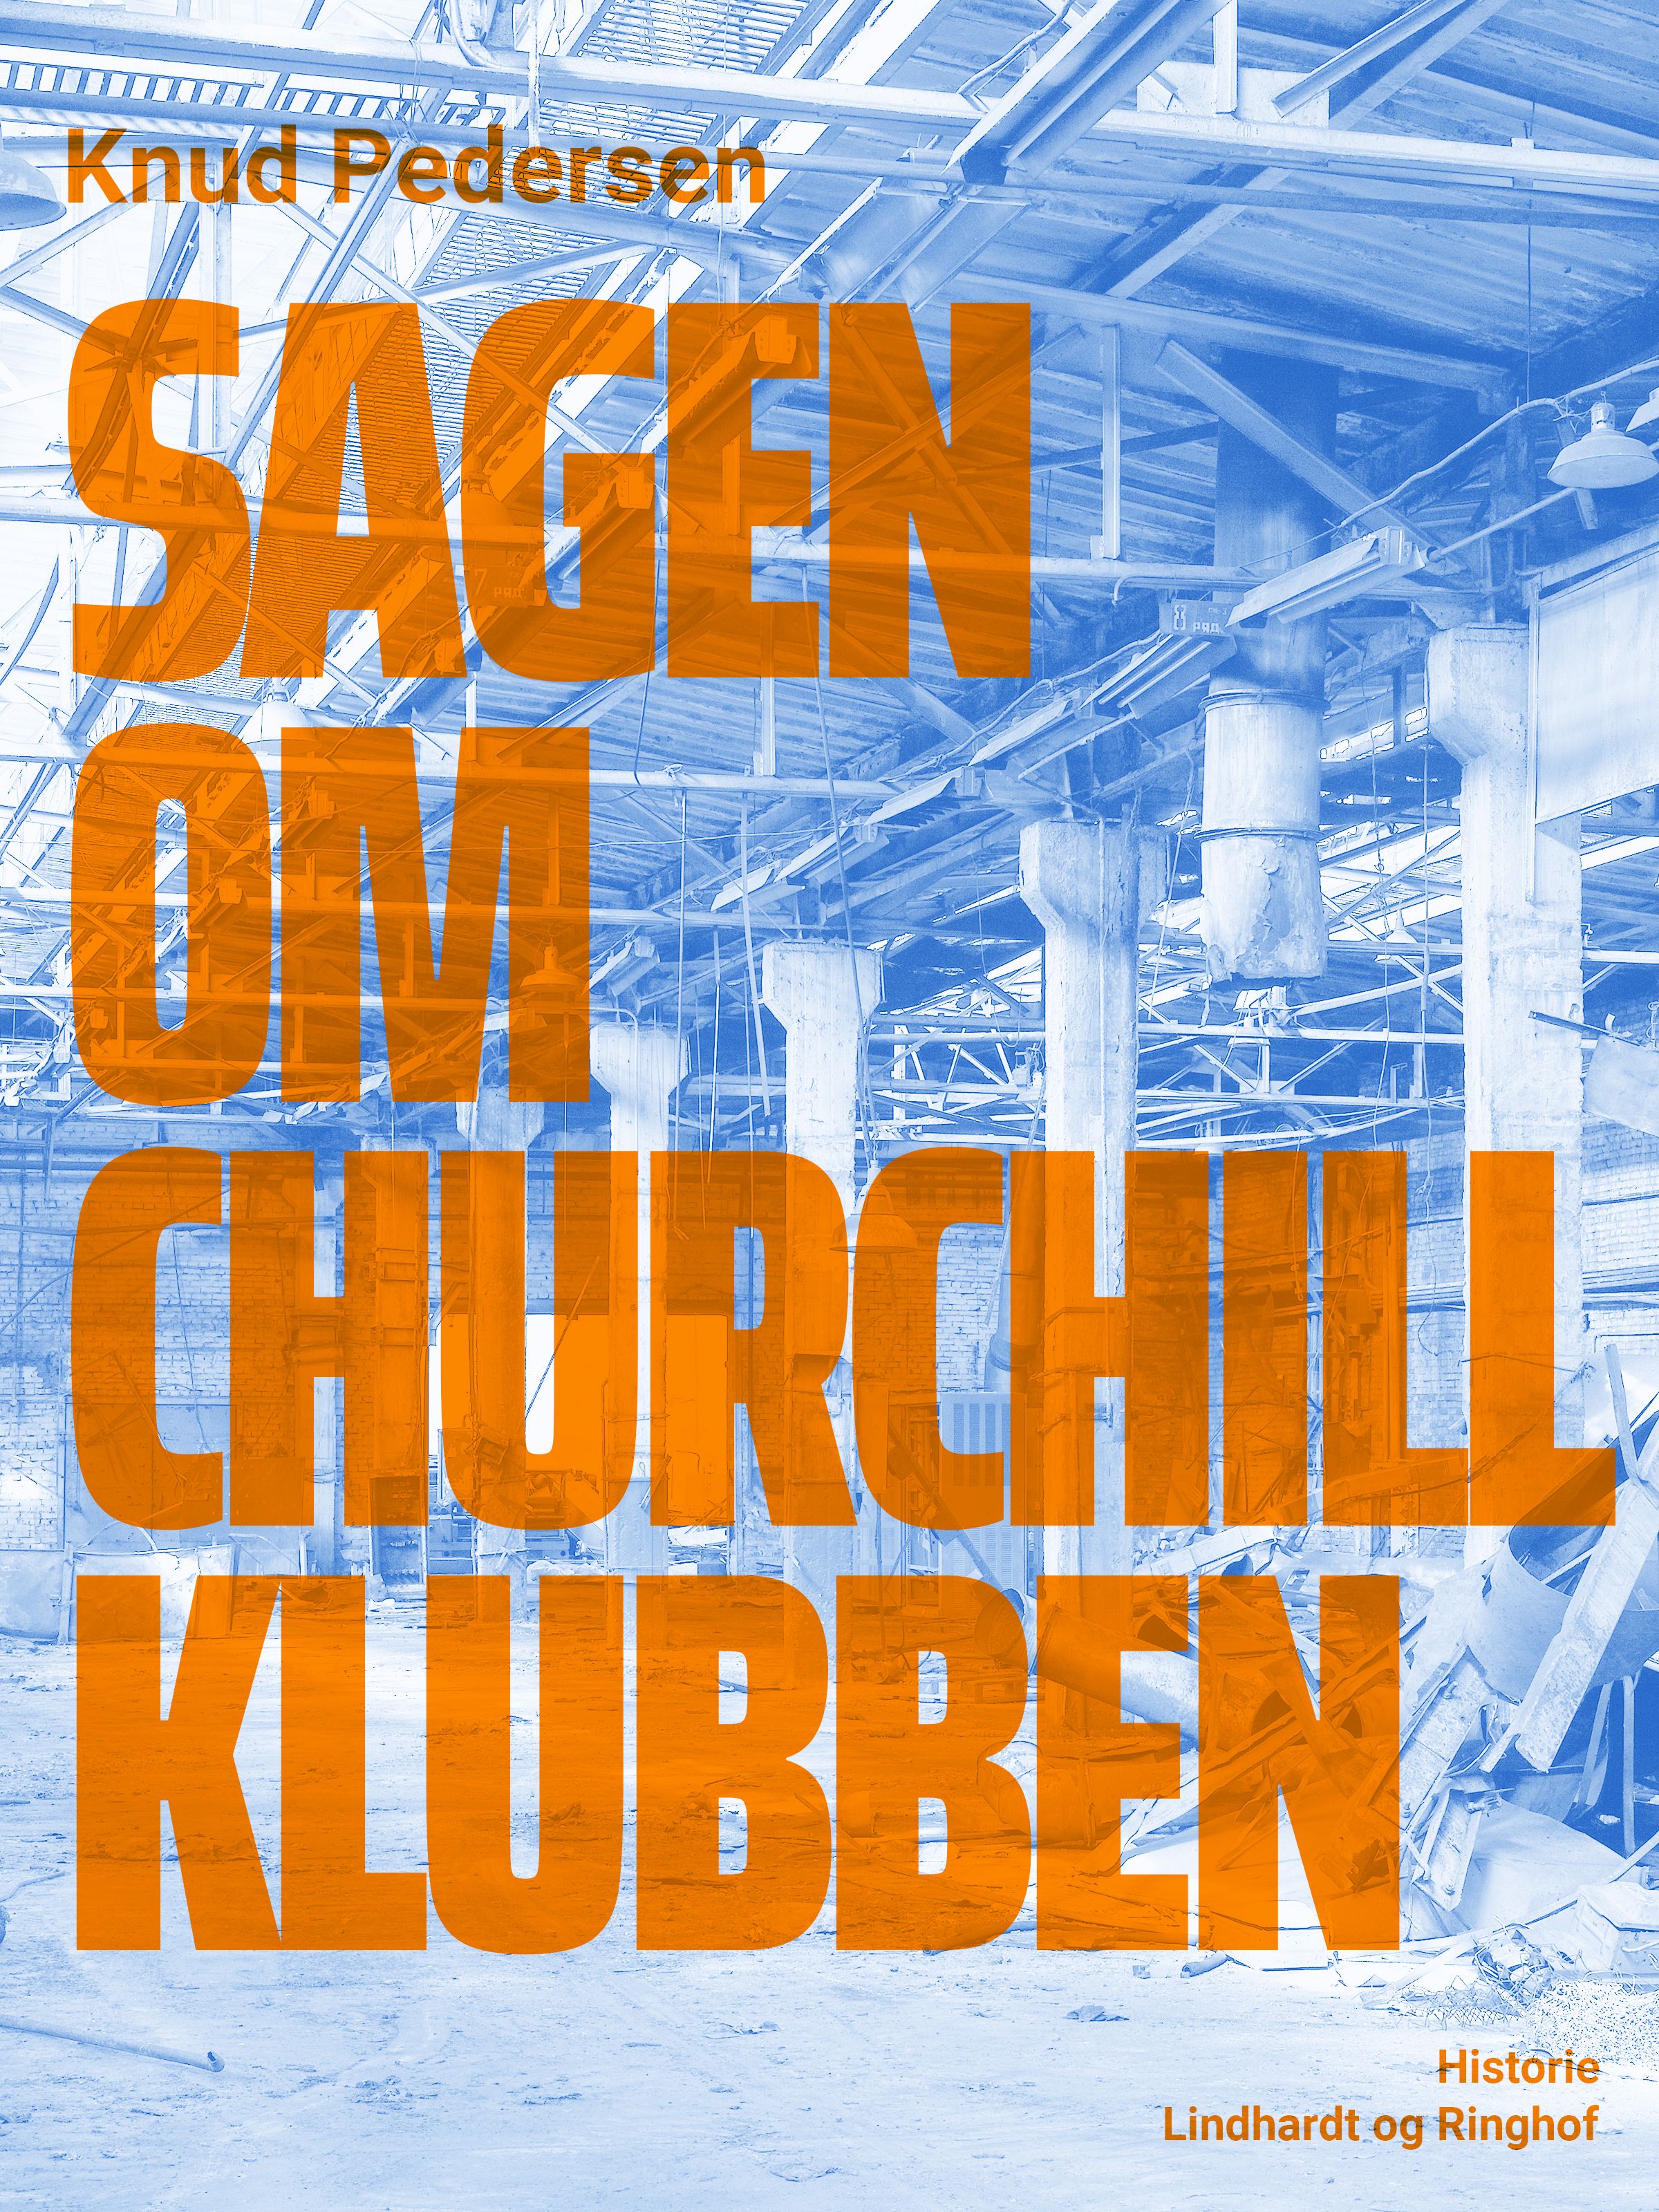 Sagen om Churchill Klubben, e-bok av Knud Pedersen